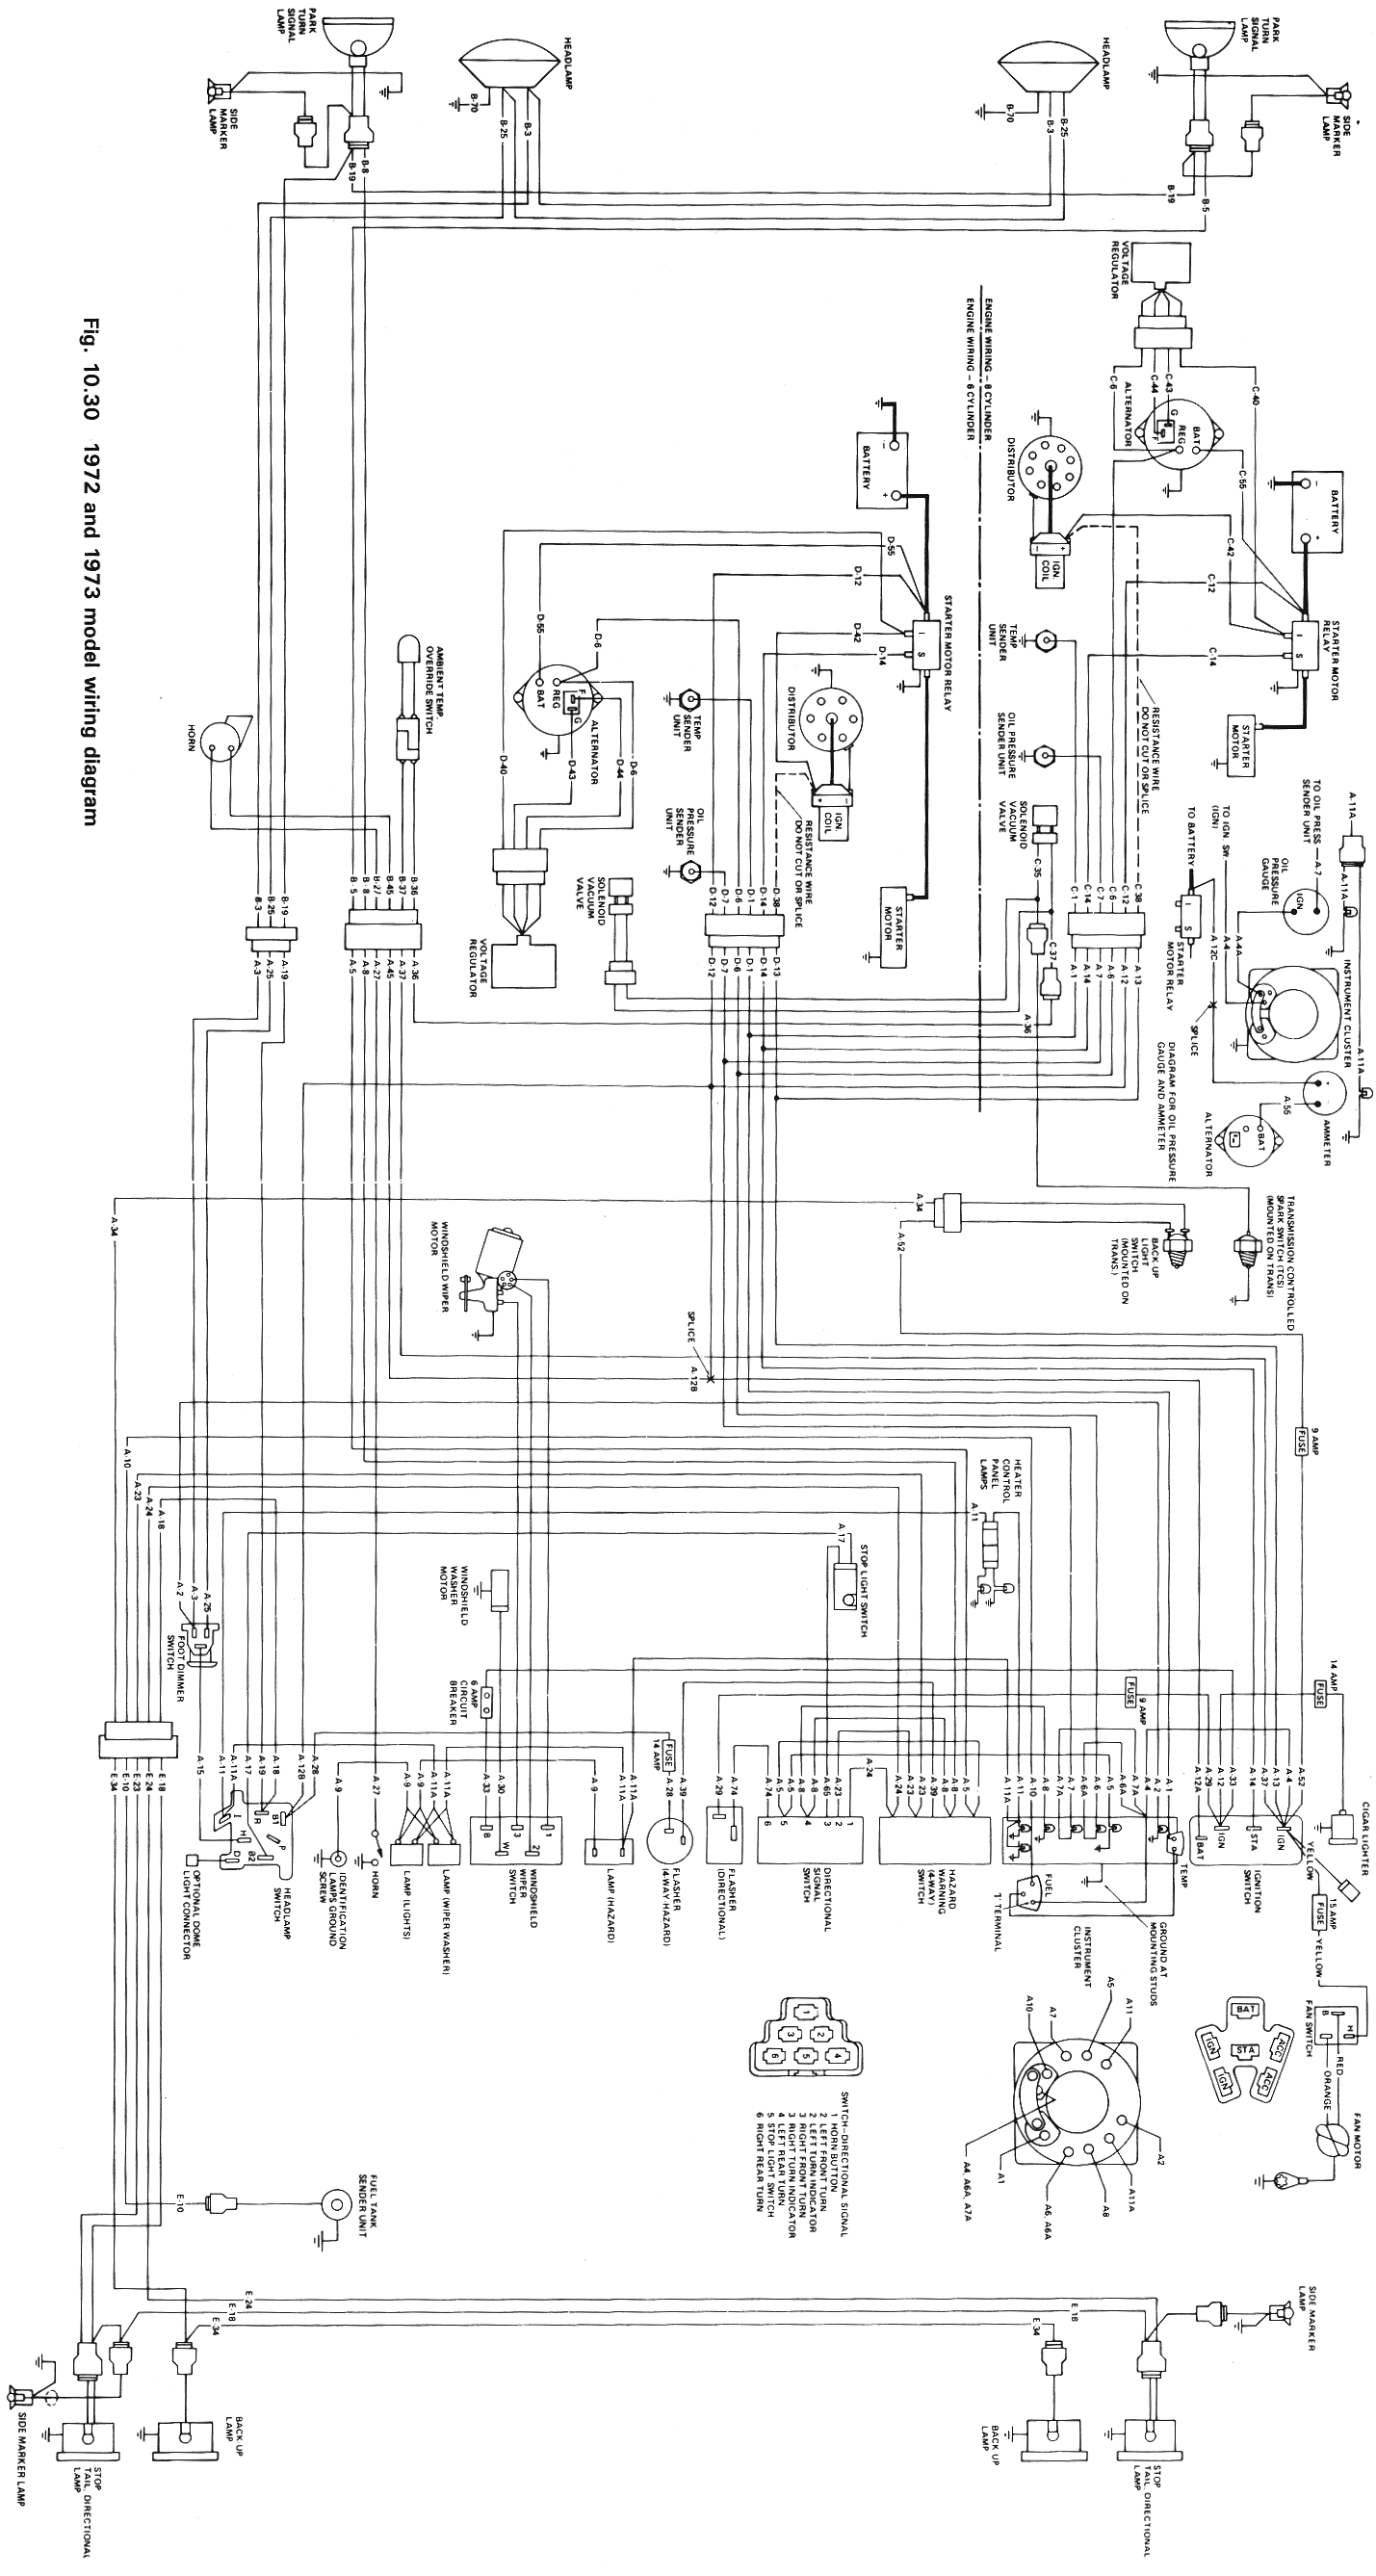 Wiring Schematics | eWillys Jeep Alternator Wiring Diagram eWillys